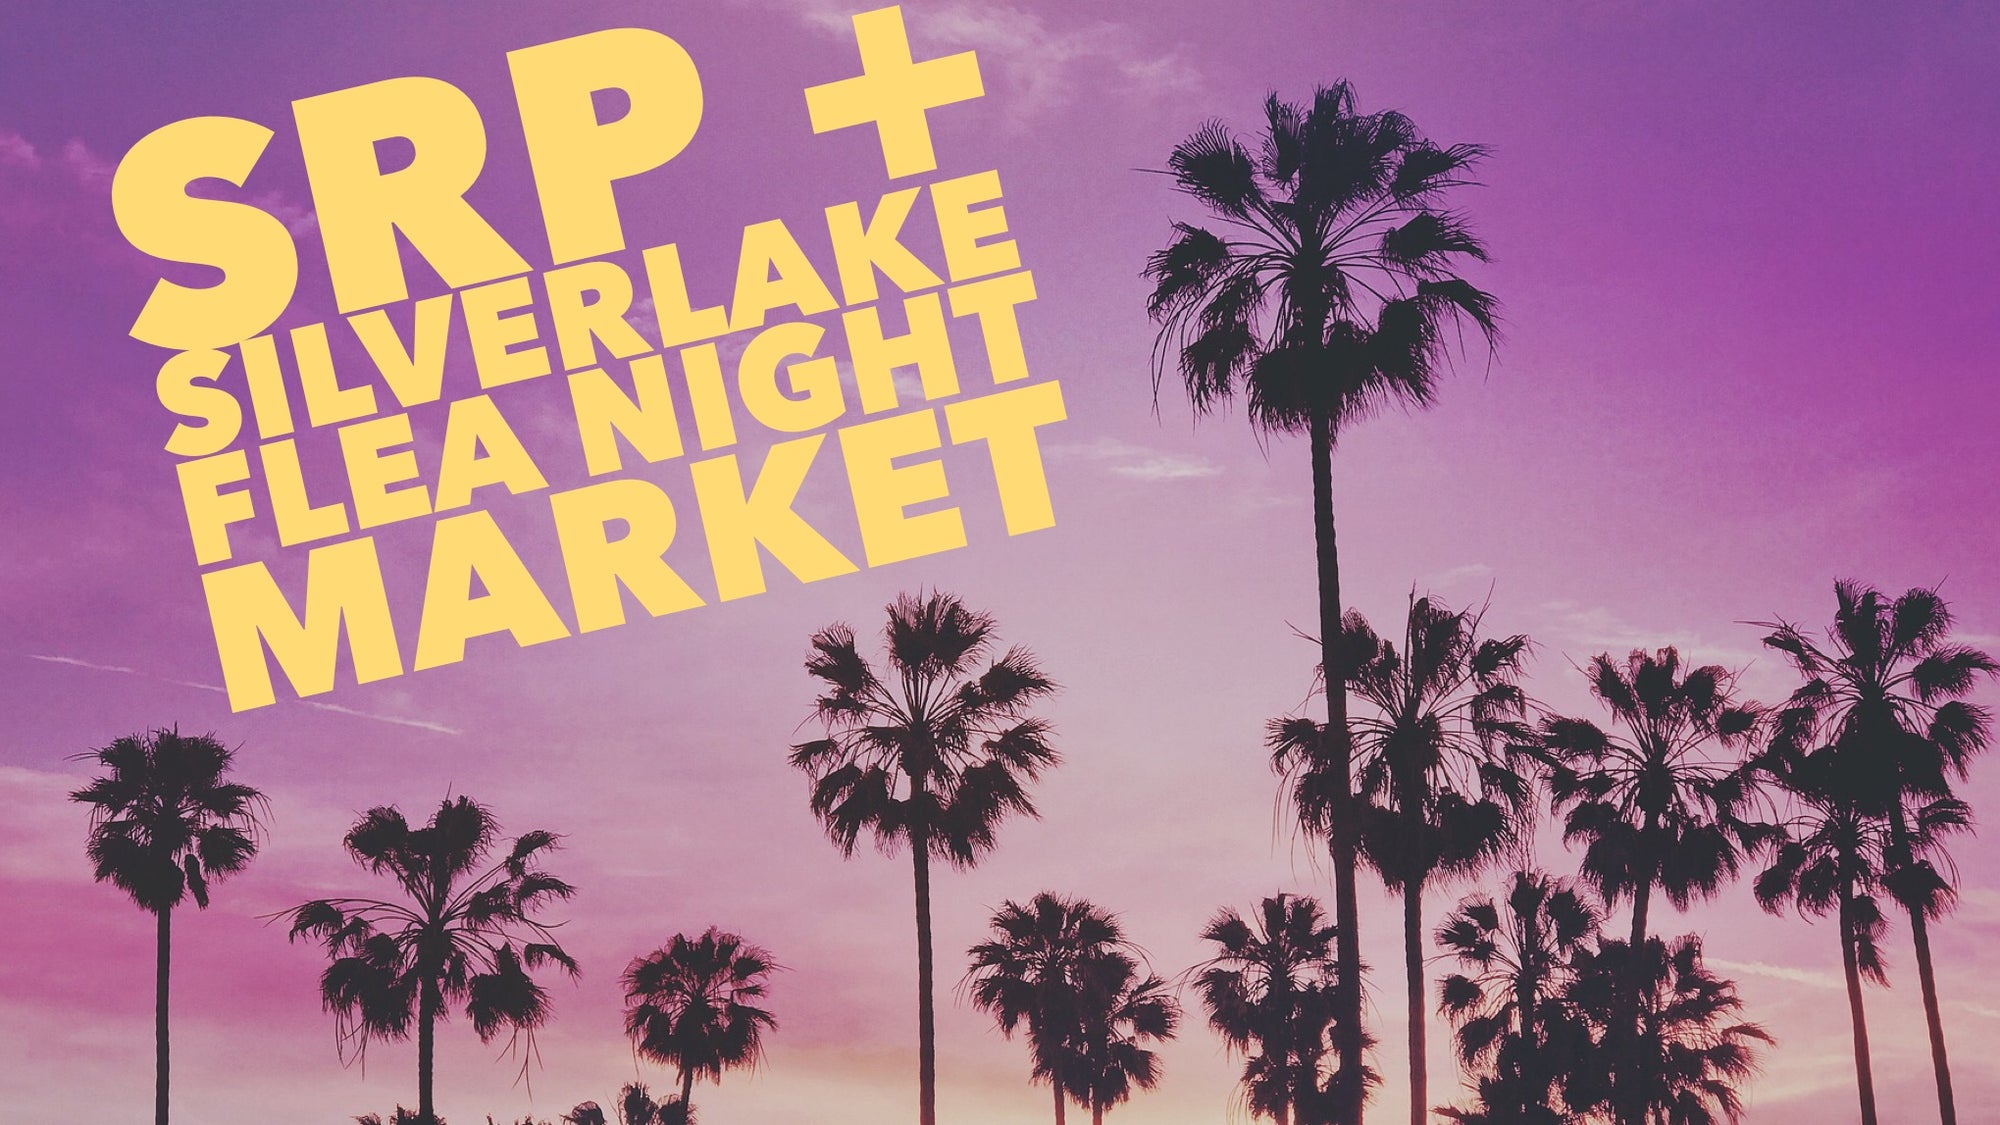 Sparkle Rock Pop Silverlake Flea Night Market Los Angeles